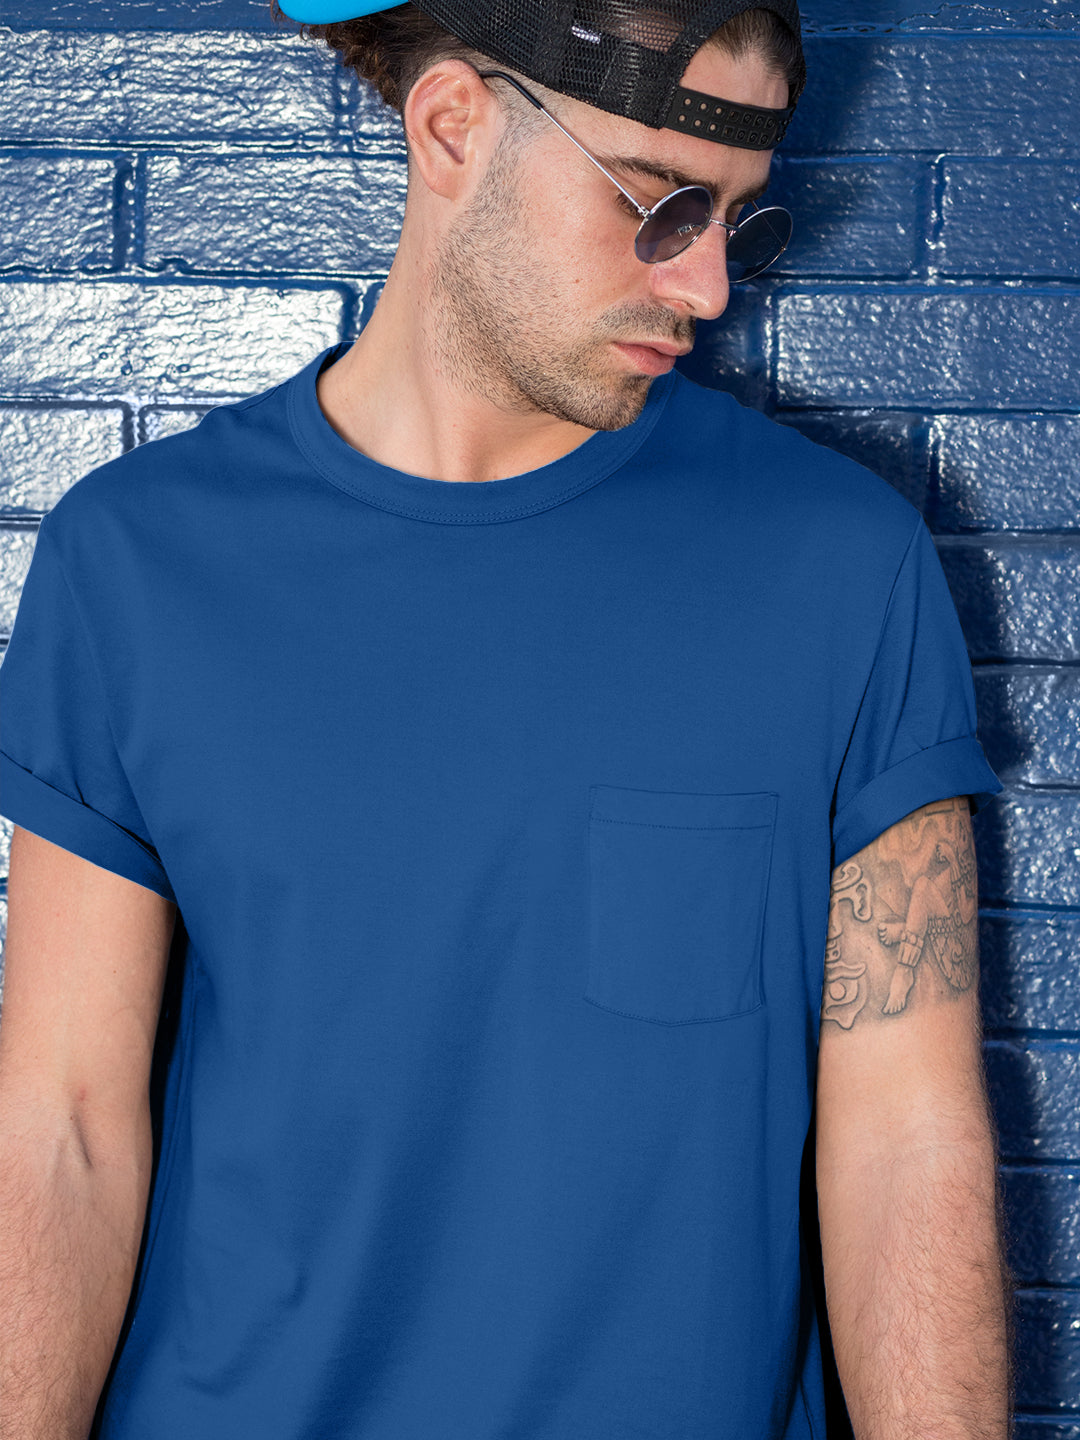 Baliza Men's 100% Cotton Round Neck T-shirt- Navy Blue